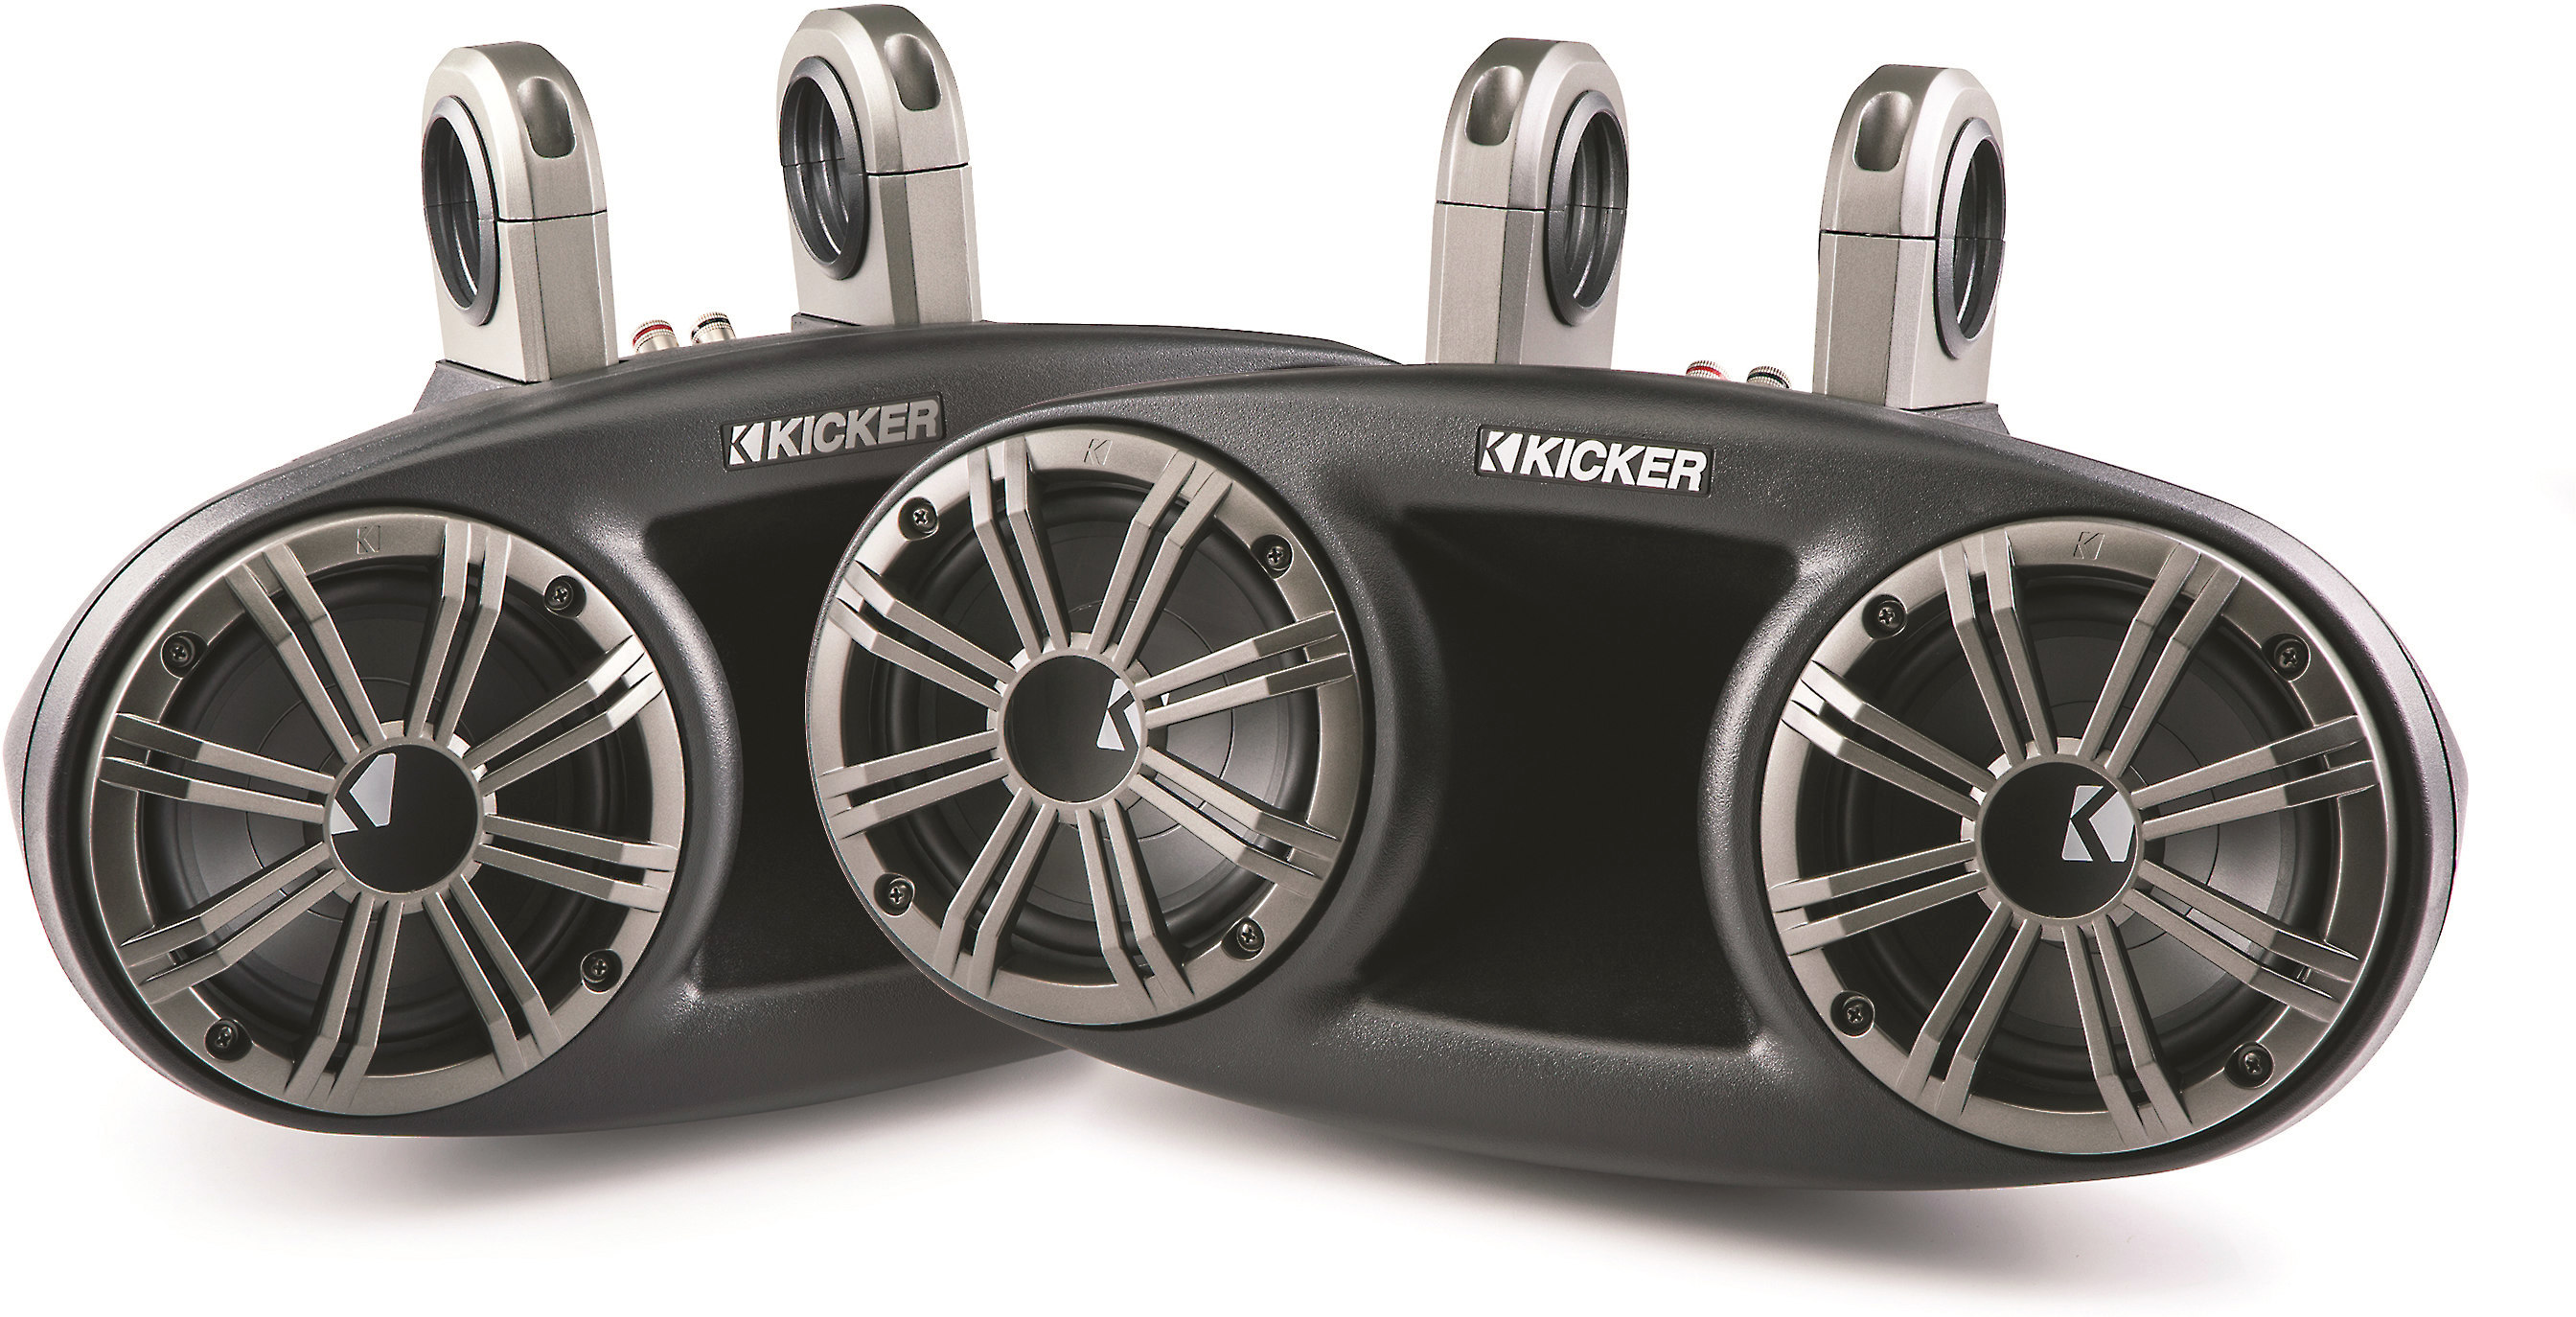 kicker boat speakers